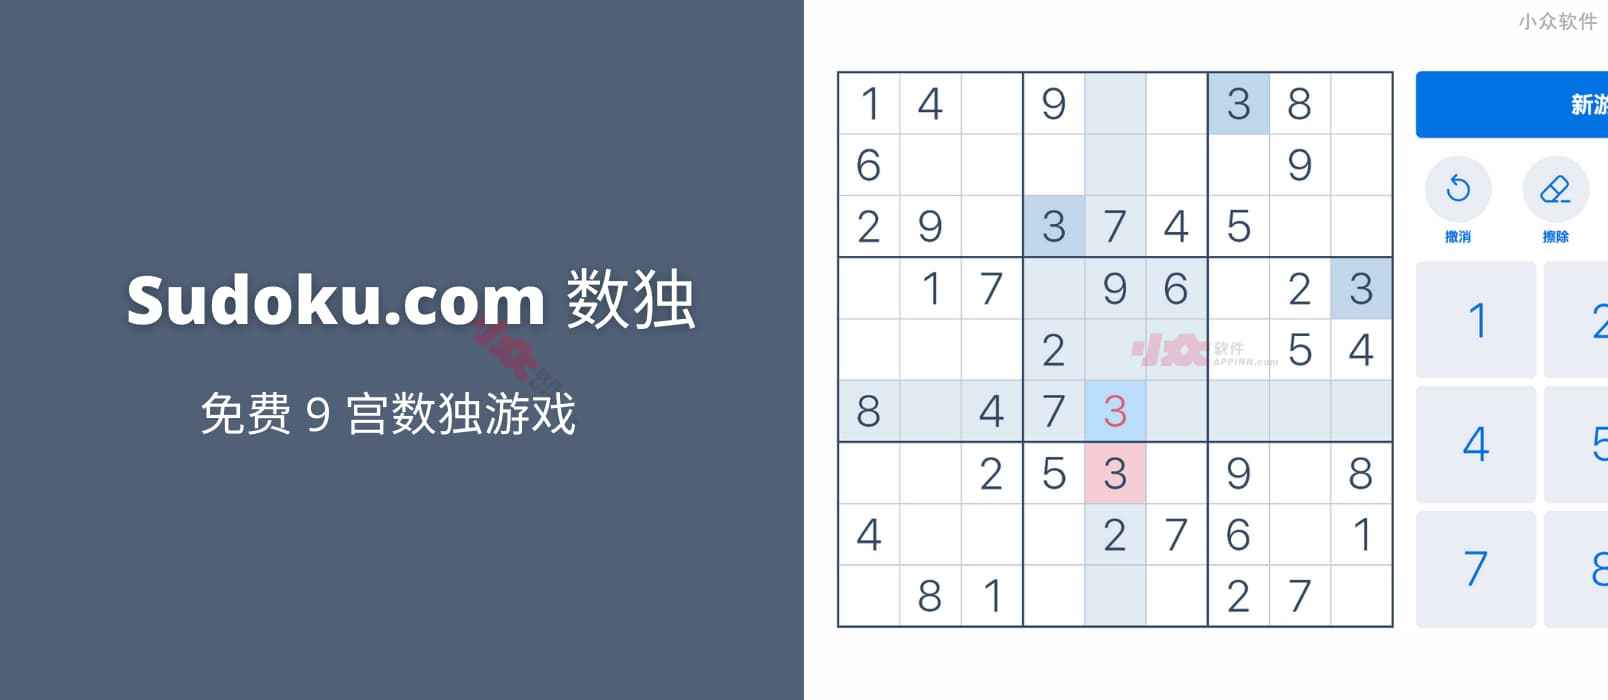 数独 – 来自 Sudoku.com 的免费 9 宫数独游戏[Web/iOS/Android]